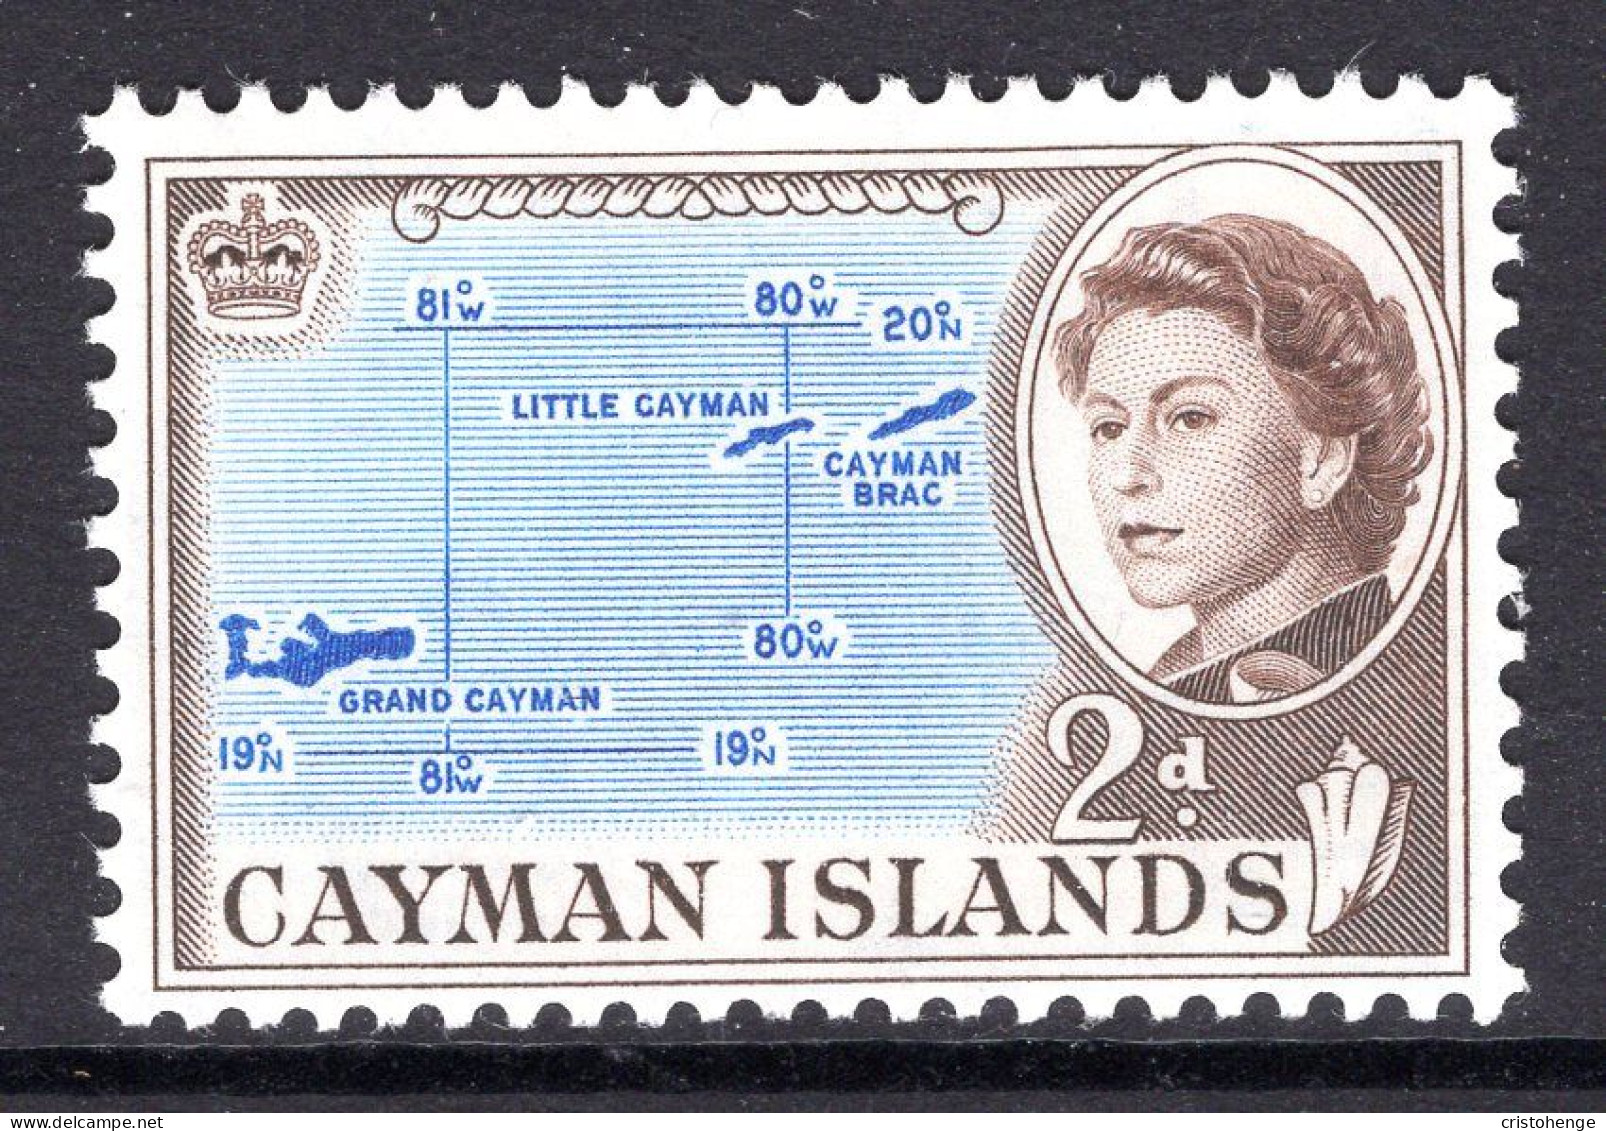 Cayman Islands 1962-64 Pictorials - 2d Map Of Cayman Islands MNH (SG 168) - Cayman Islands